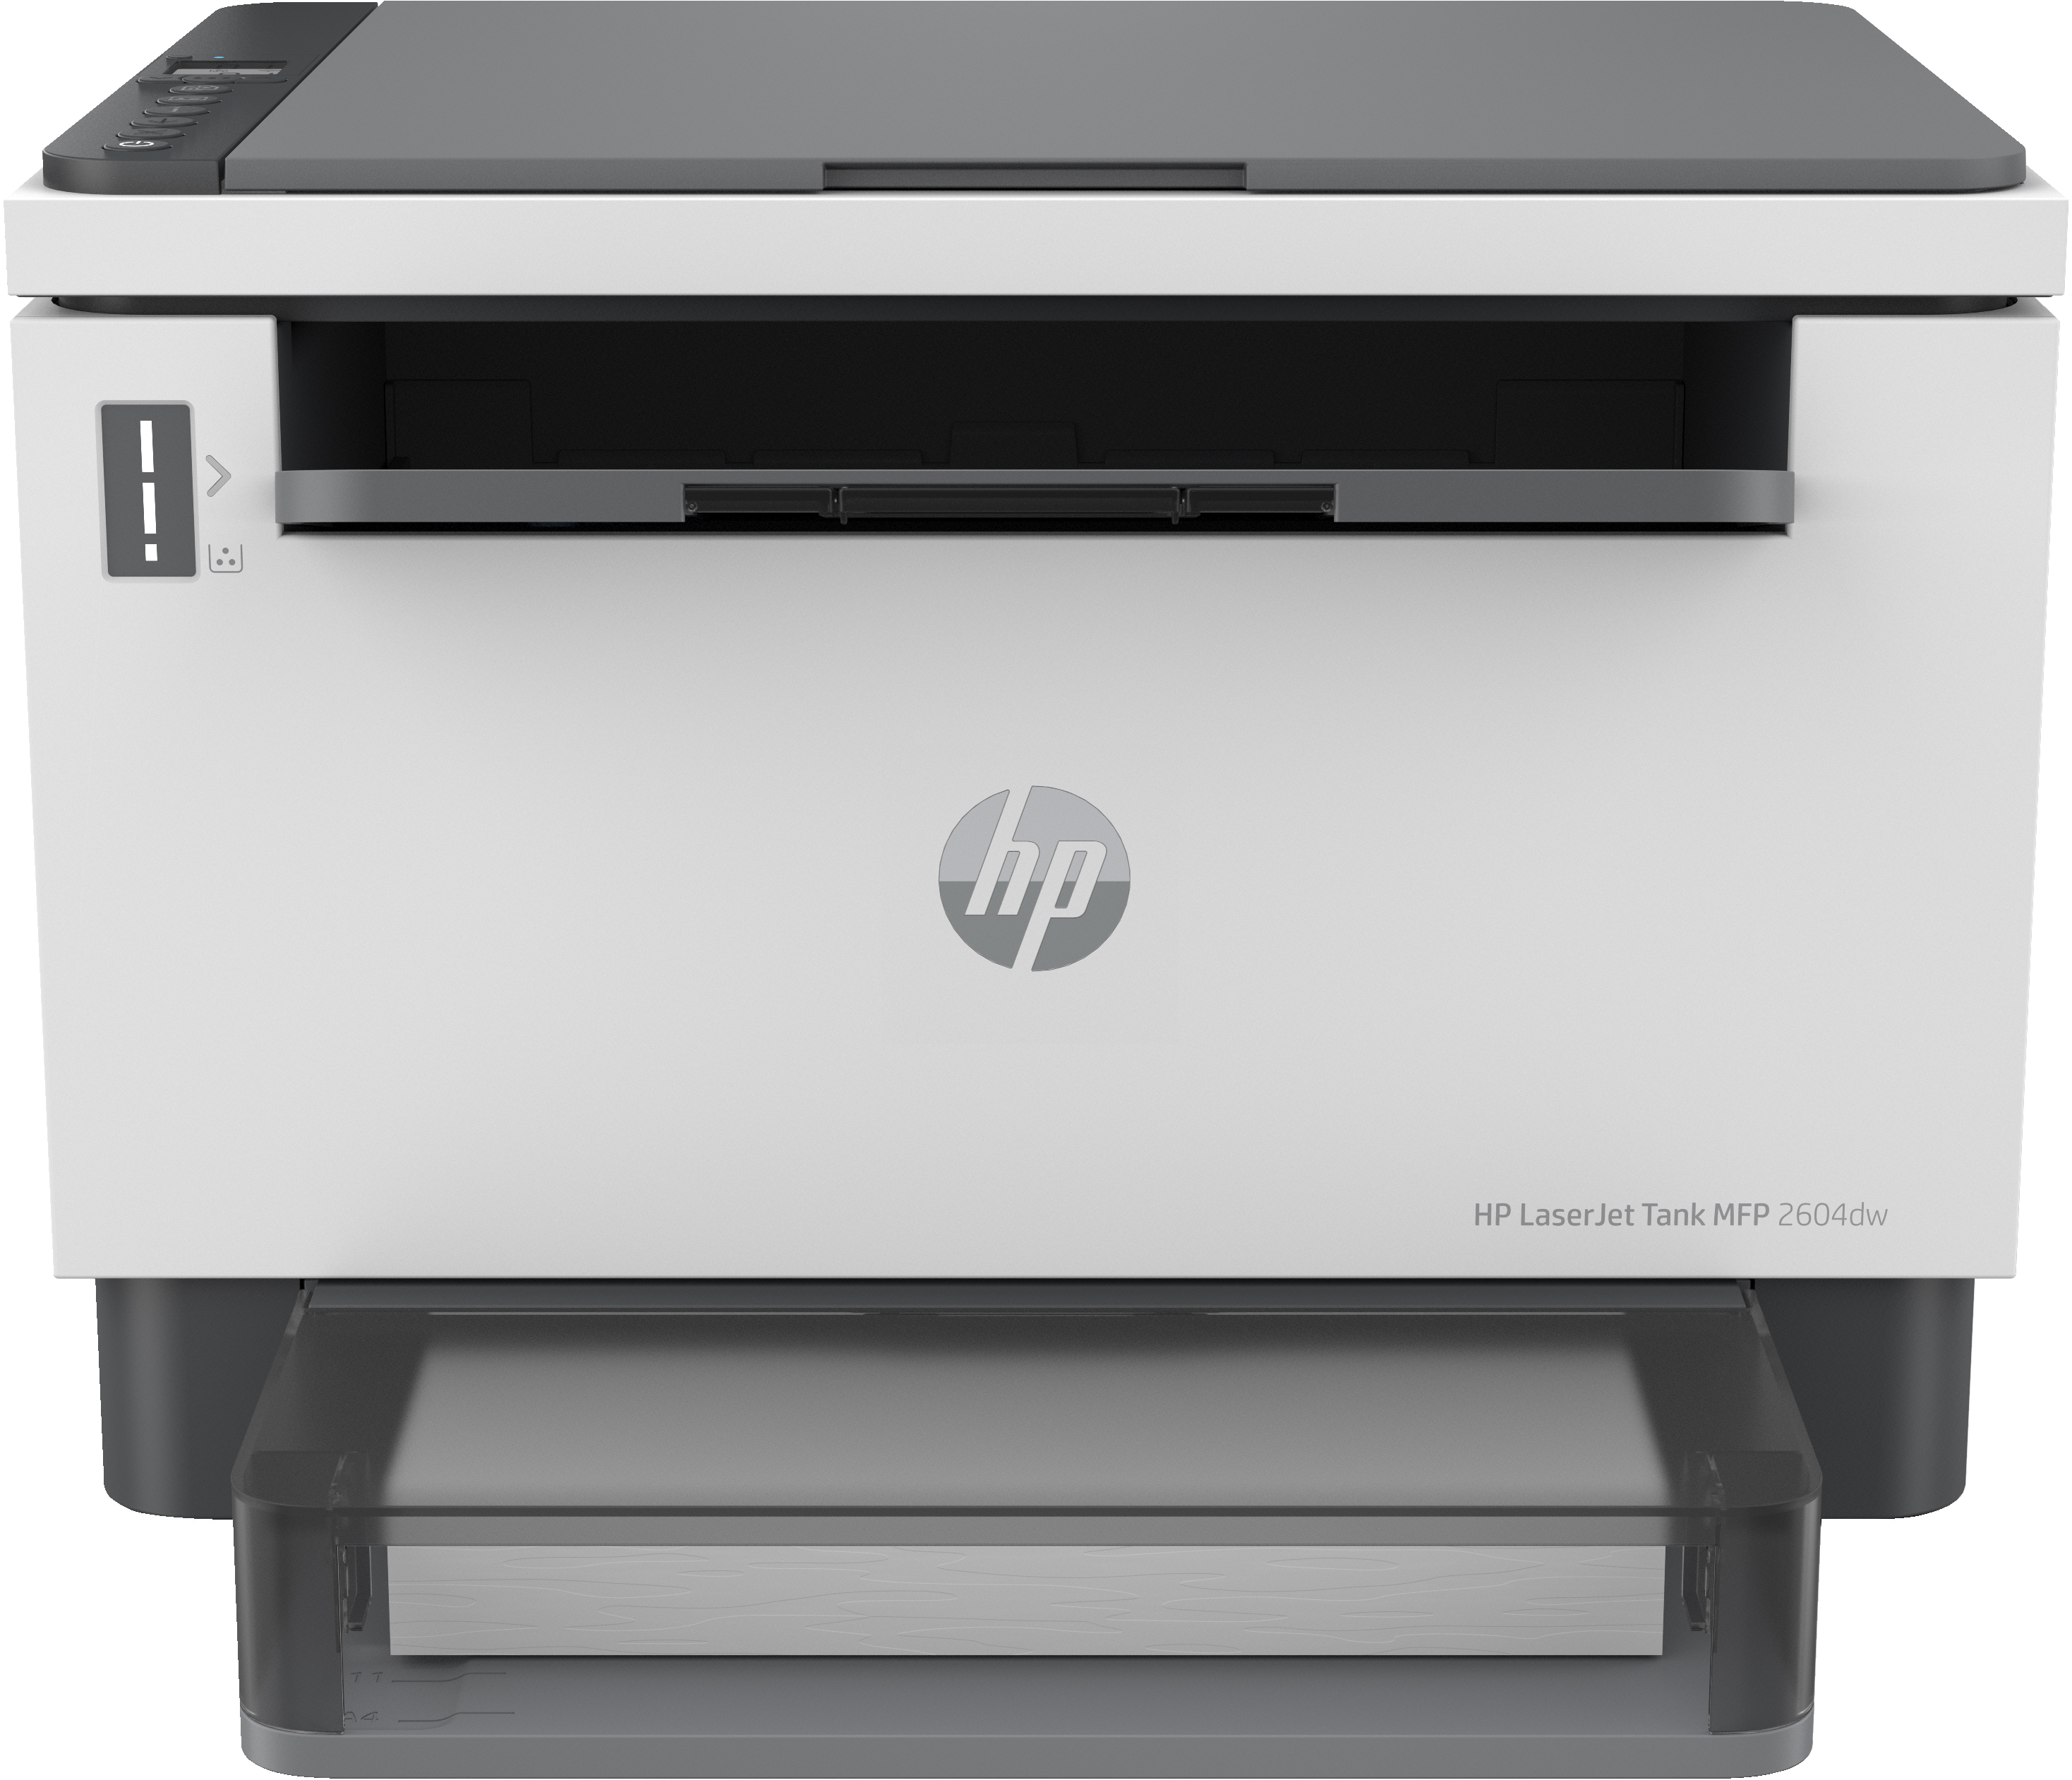 HP HP LaserJet Tank MFP 2604dw printer, Zwart-wit, Printer voor Bedrijf, Draadloos; Dubbelzijdig printen; Scannen naar e-mail; Scannen naar pdf